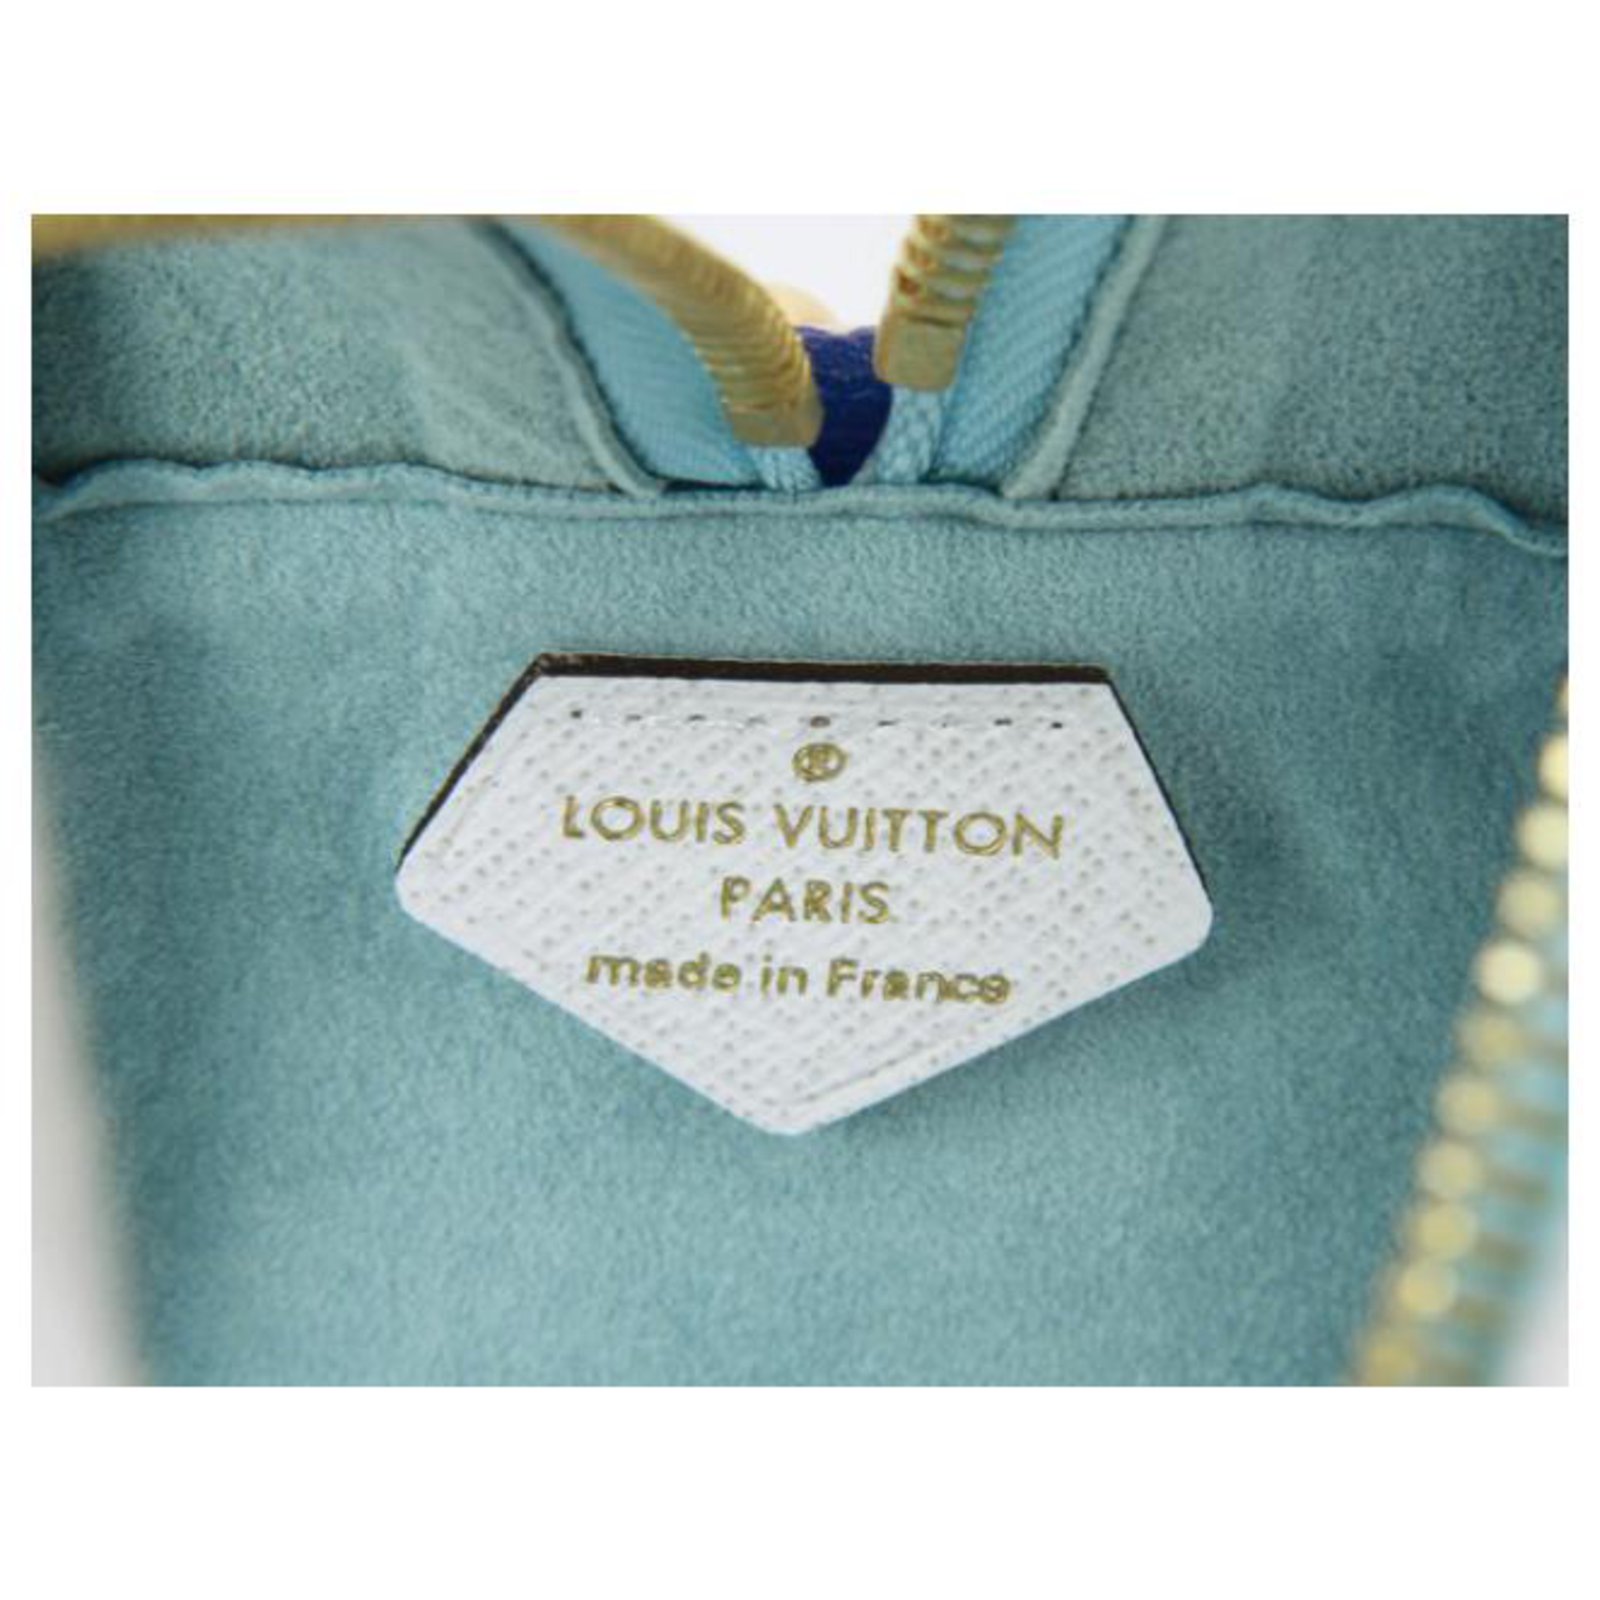 Louis Vuitton Beach Pouch Multiple colors Light blue Dark blue